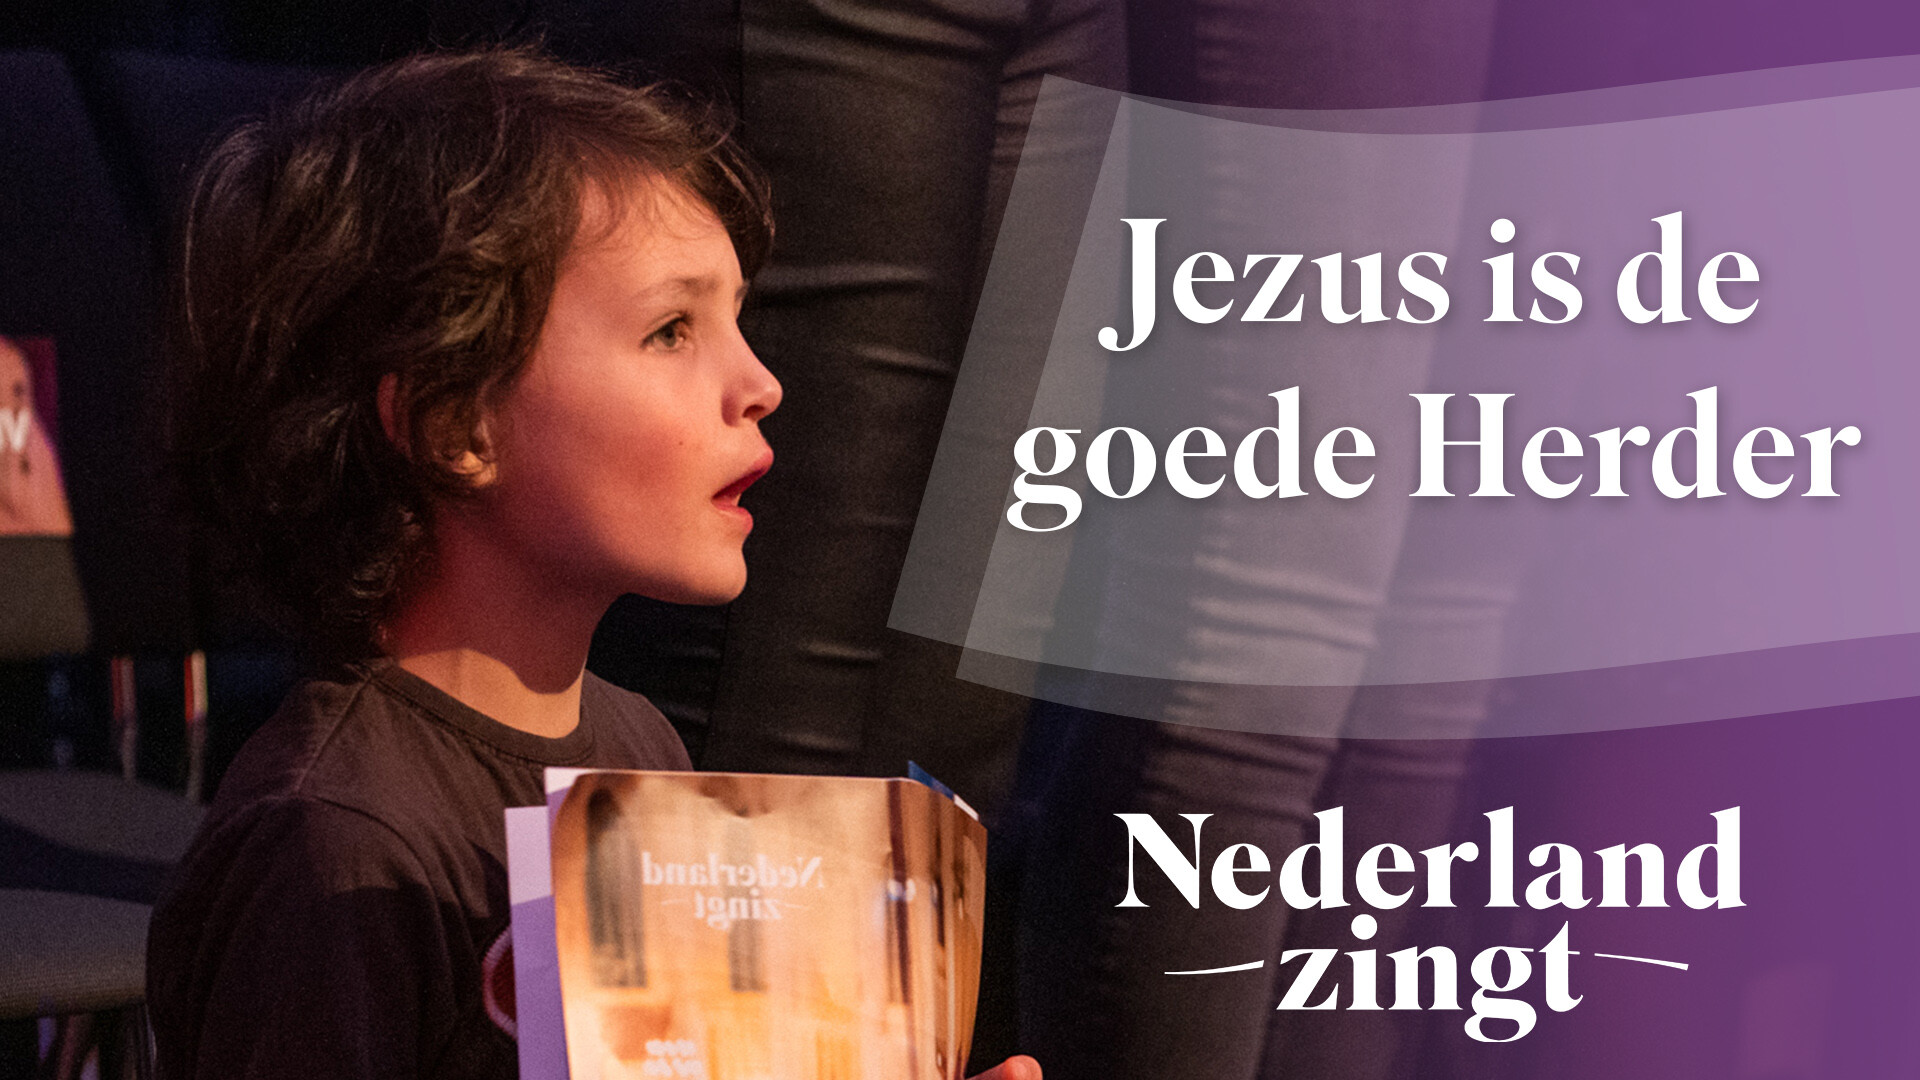 Uitgelezene Jezus is de goede herder - Lied en tekst - Nederland Zingt PE-61